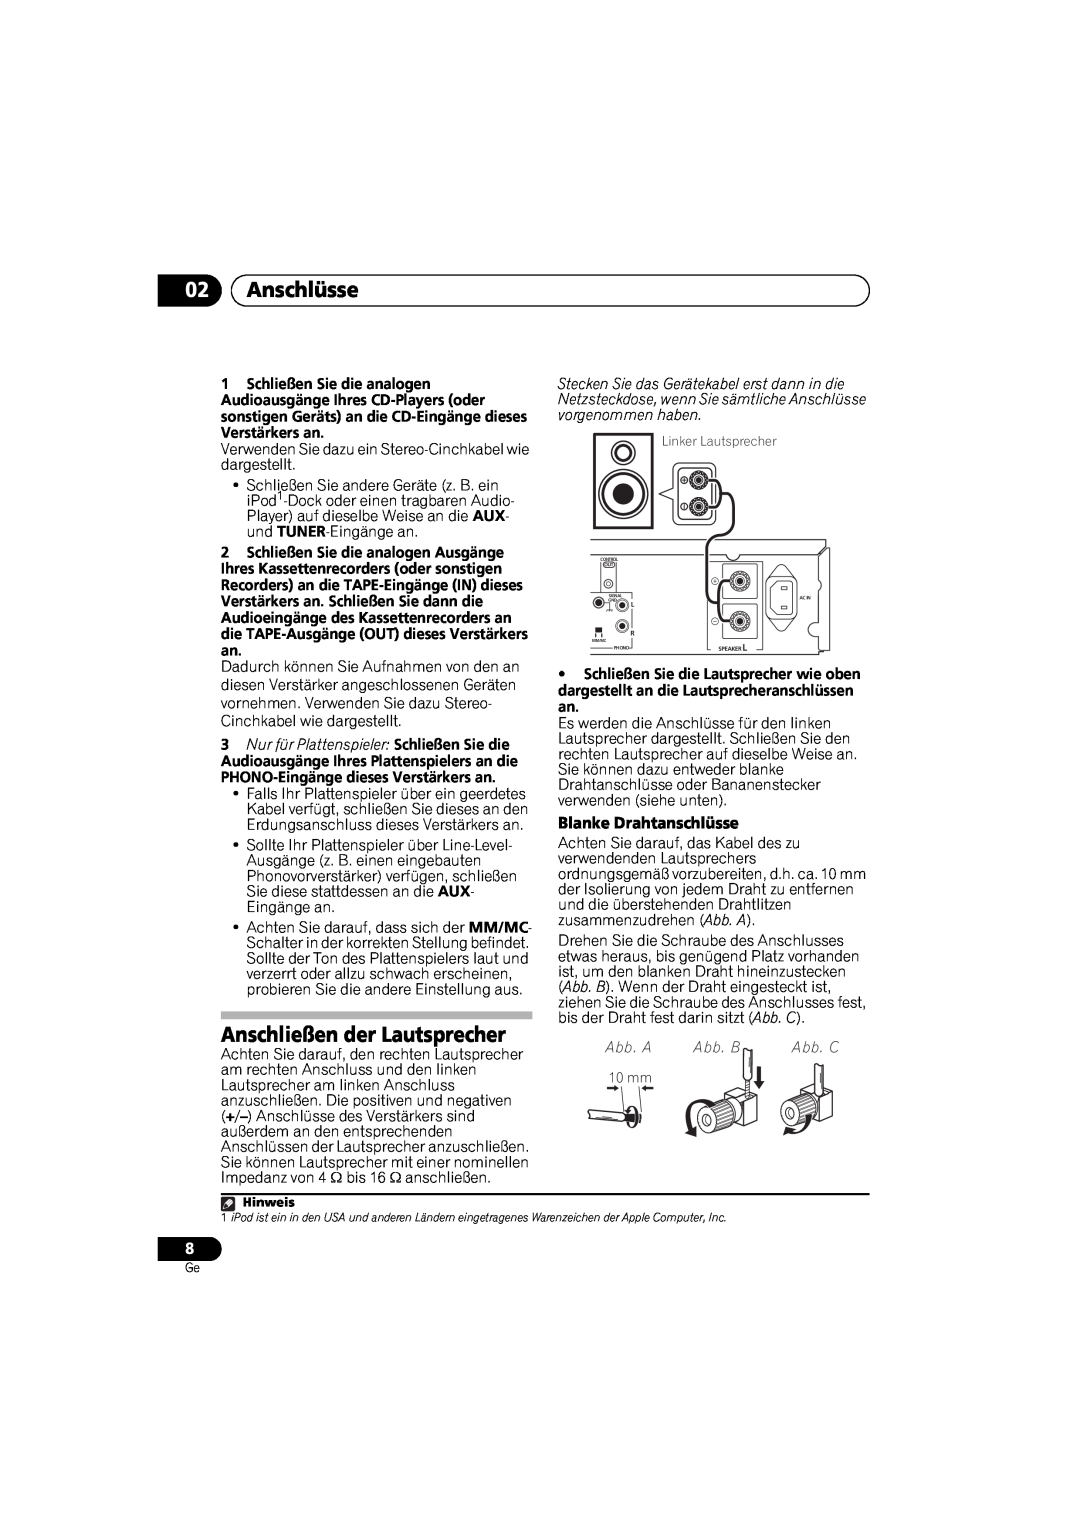 Pioneer A-A9-J manual 02Anschlüsse, Anschließen der Lautsprecher, Blanke Drahtanschlüsse, Abb. A, Abb. B 